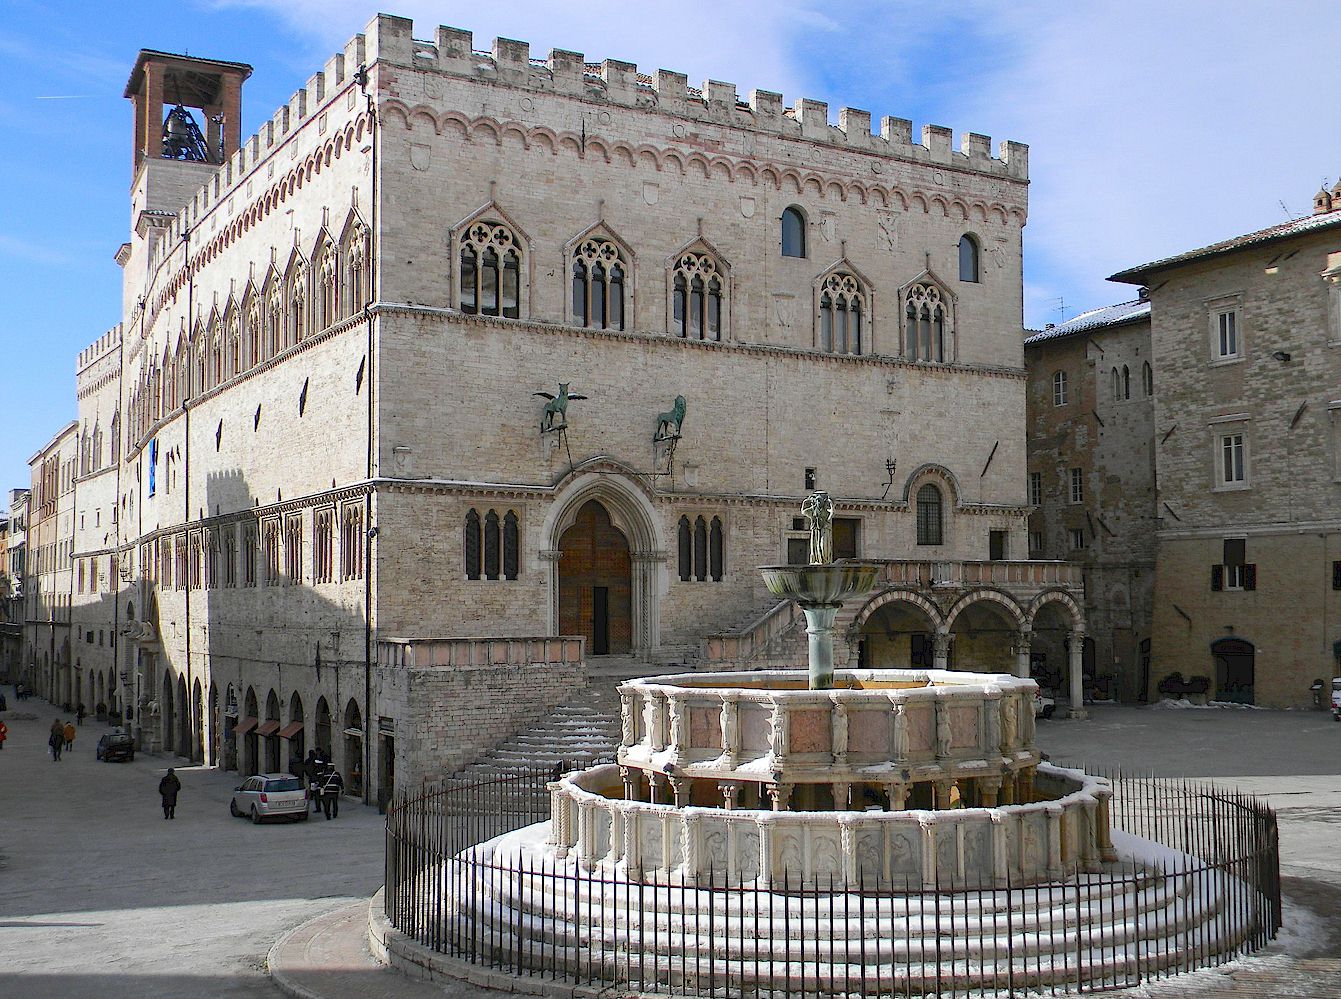 Palazzo dei Priori and Fontana Maggiore in Perugia